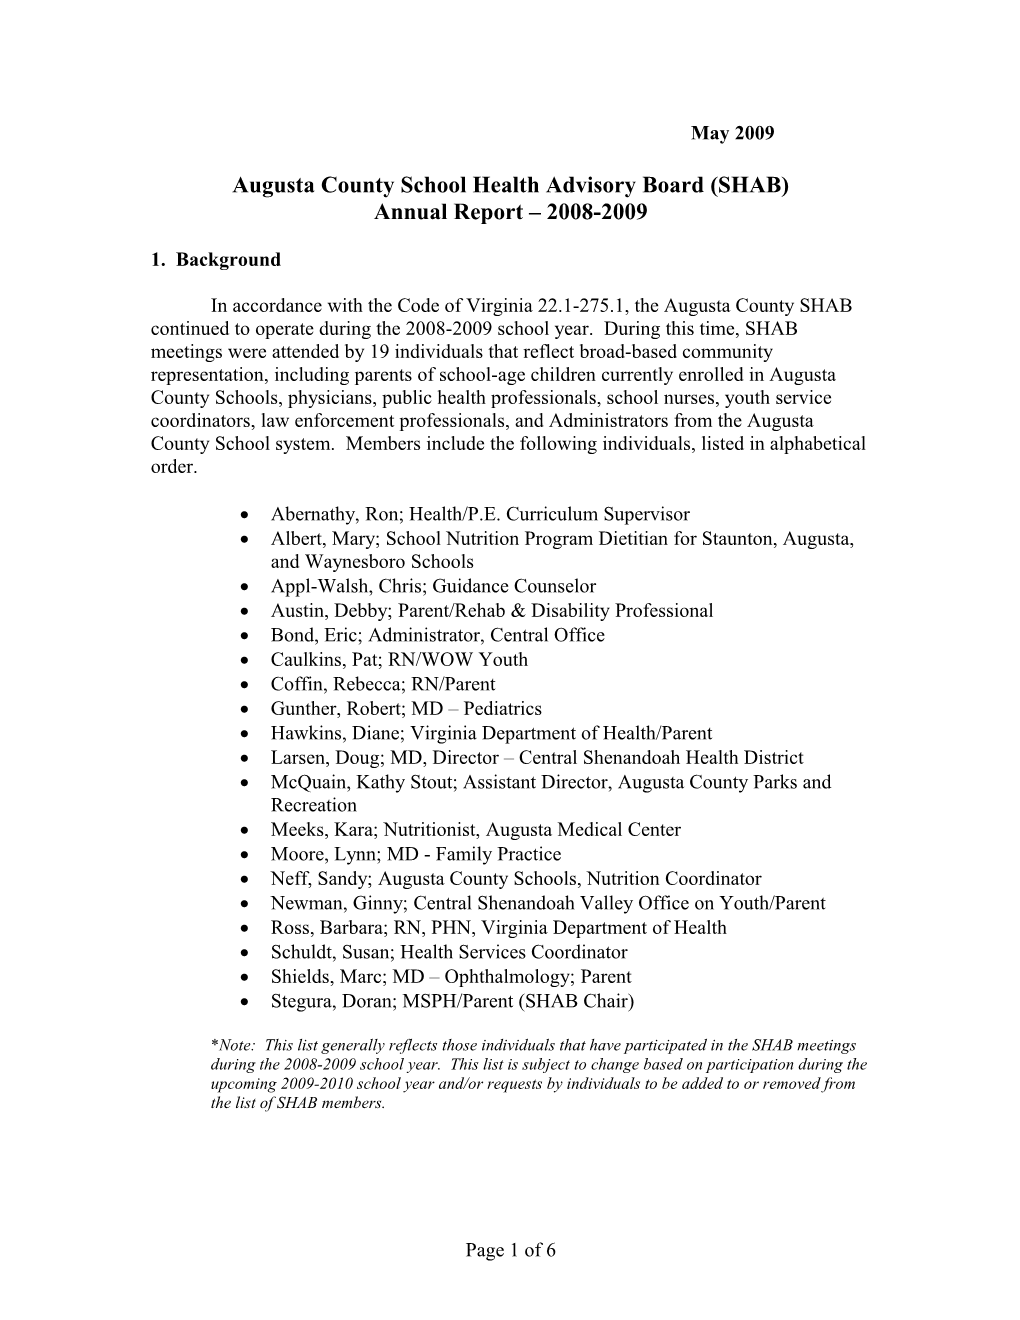 Augusta County School Health Advisory Board (SHAB)